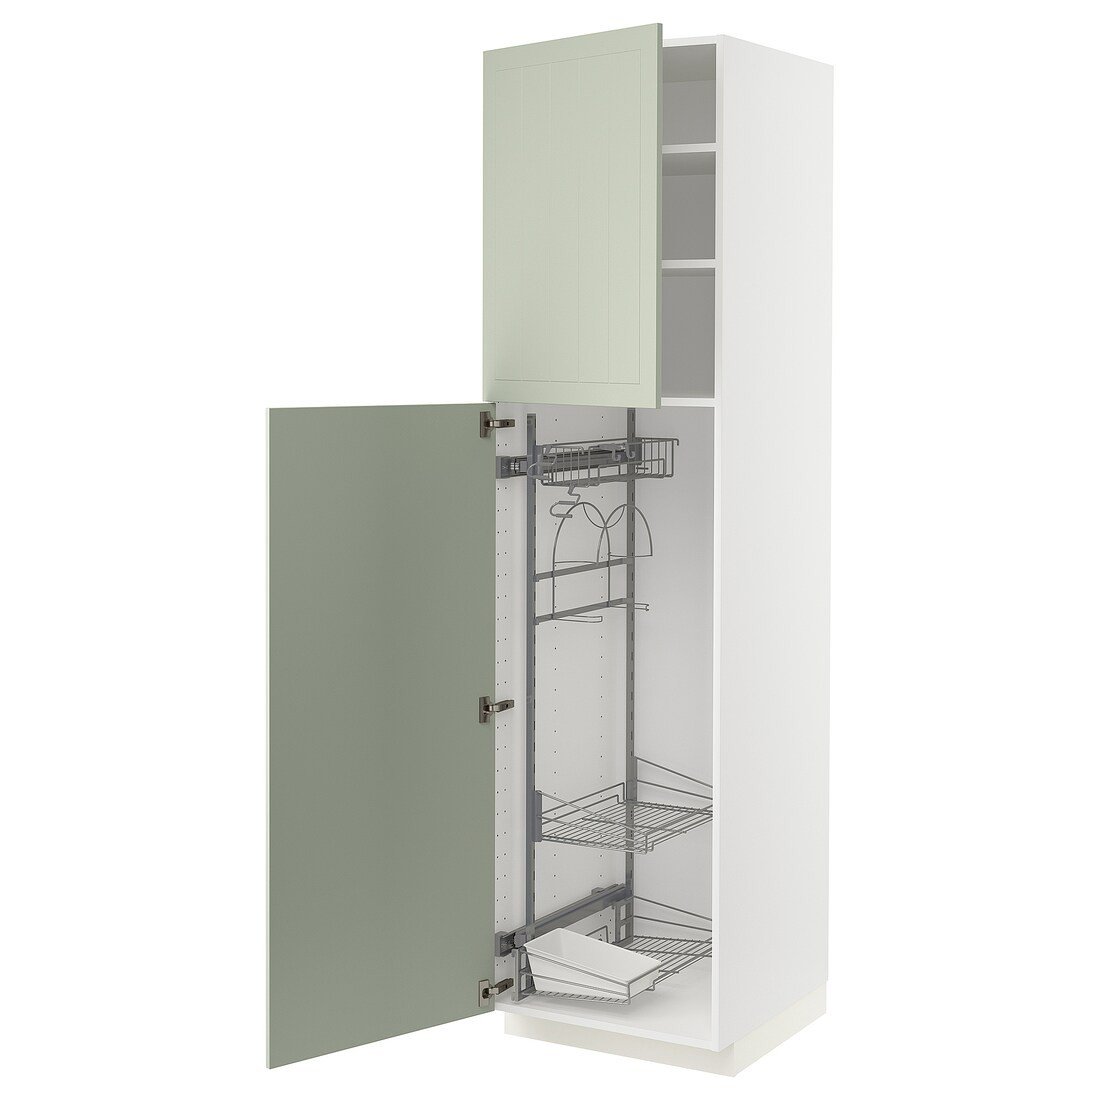 METOD МЕТОД Висока шафа з відділенням для аксесуарів для прибирання, білий / Stensund світло-зелений, 60x60x220 см